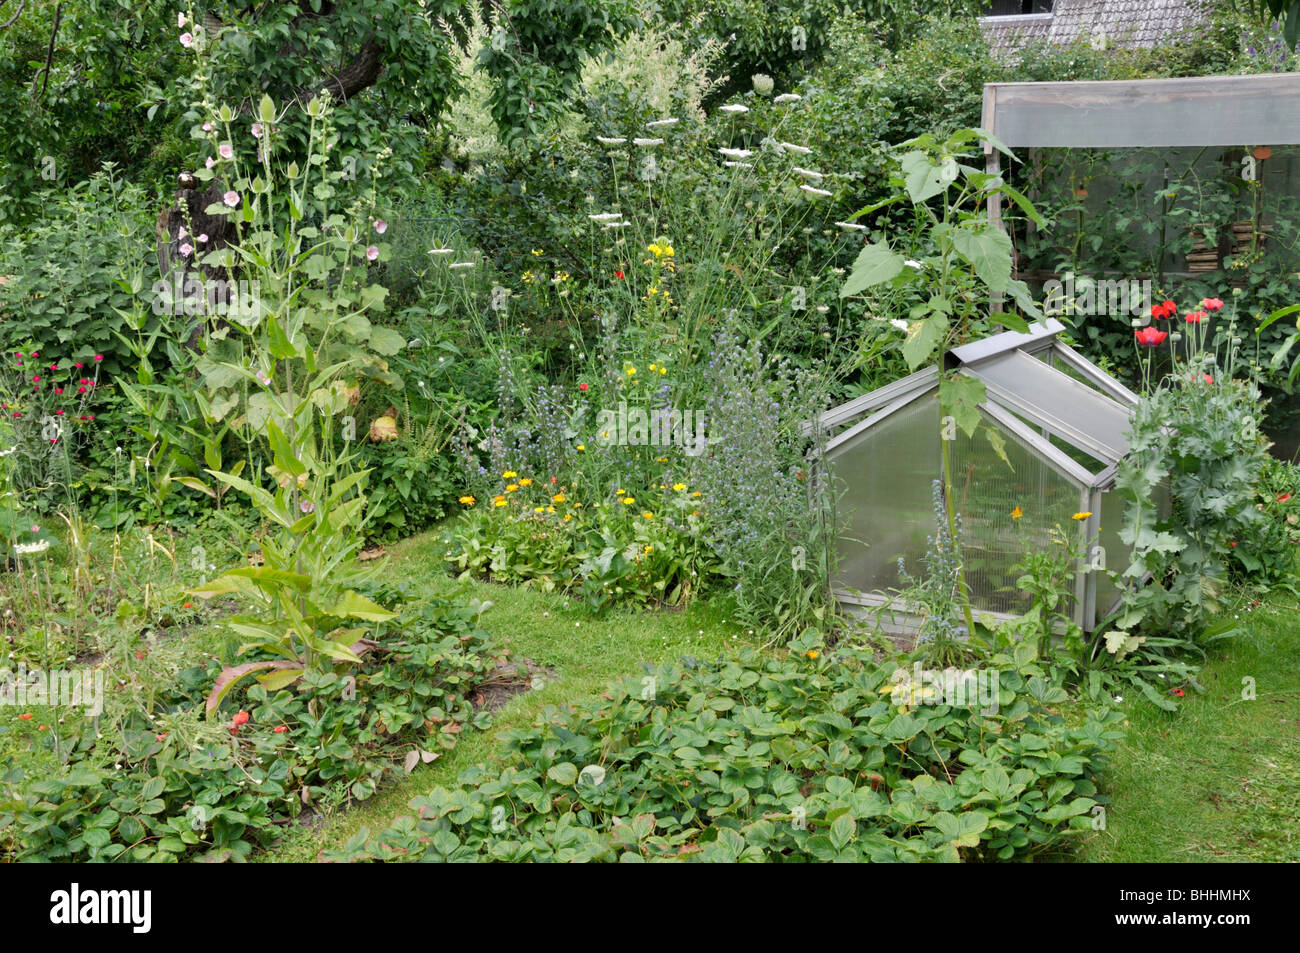 Natürlichen Garten mit Obst und Gemüse Betten. Design: Susanna komischke Stockfoto